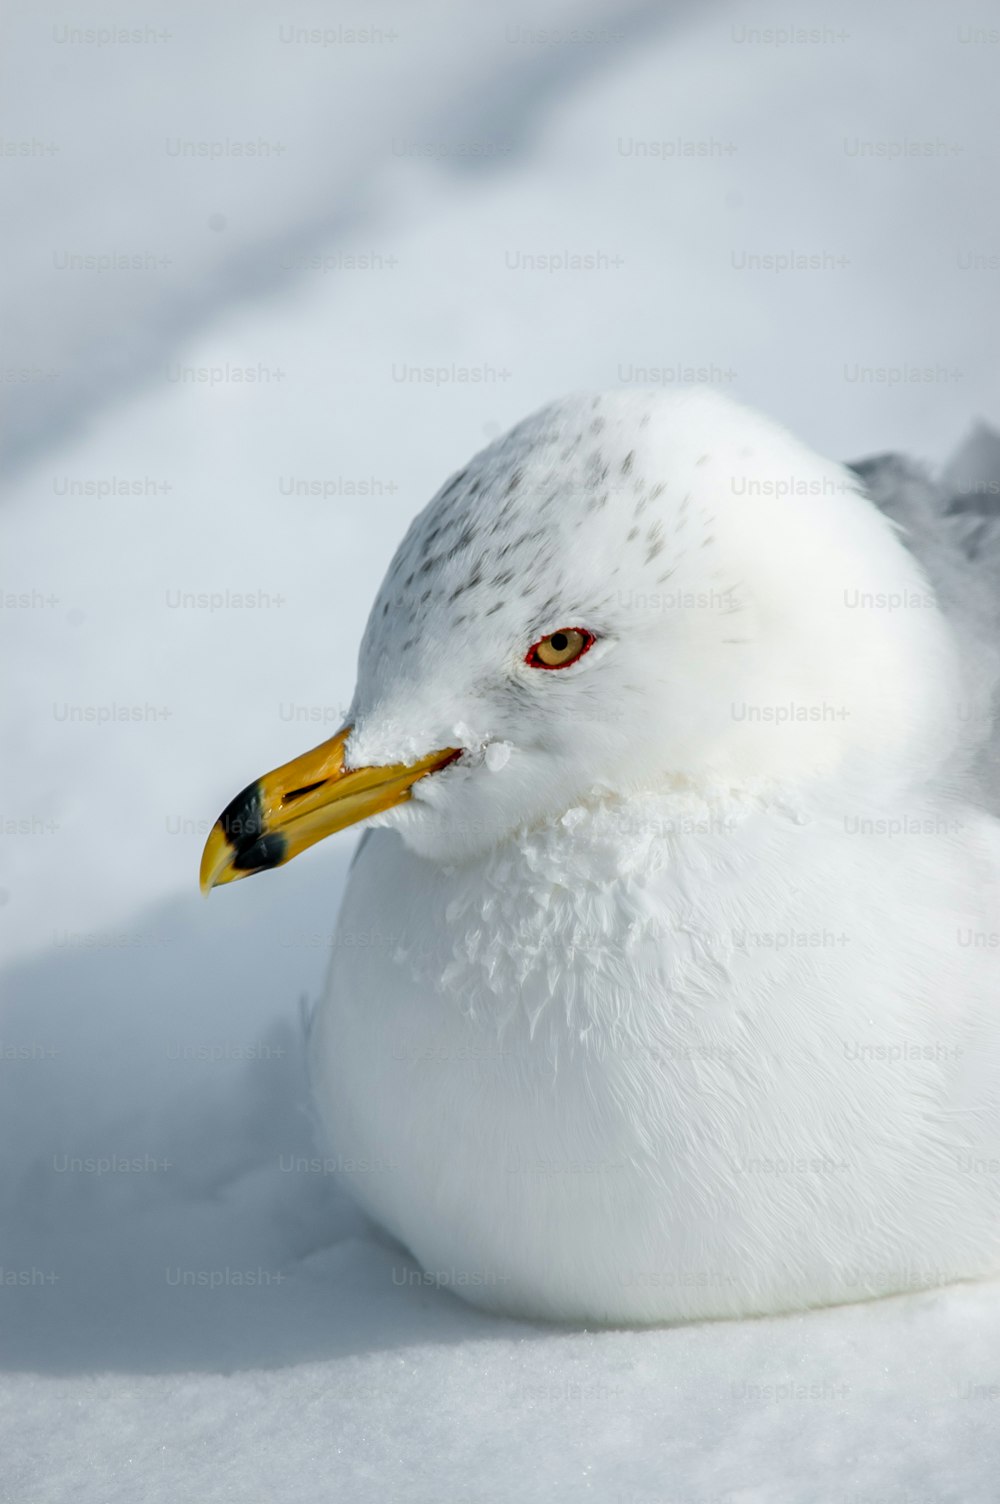 Un primo piano di un uccello nella neve